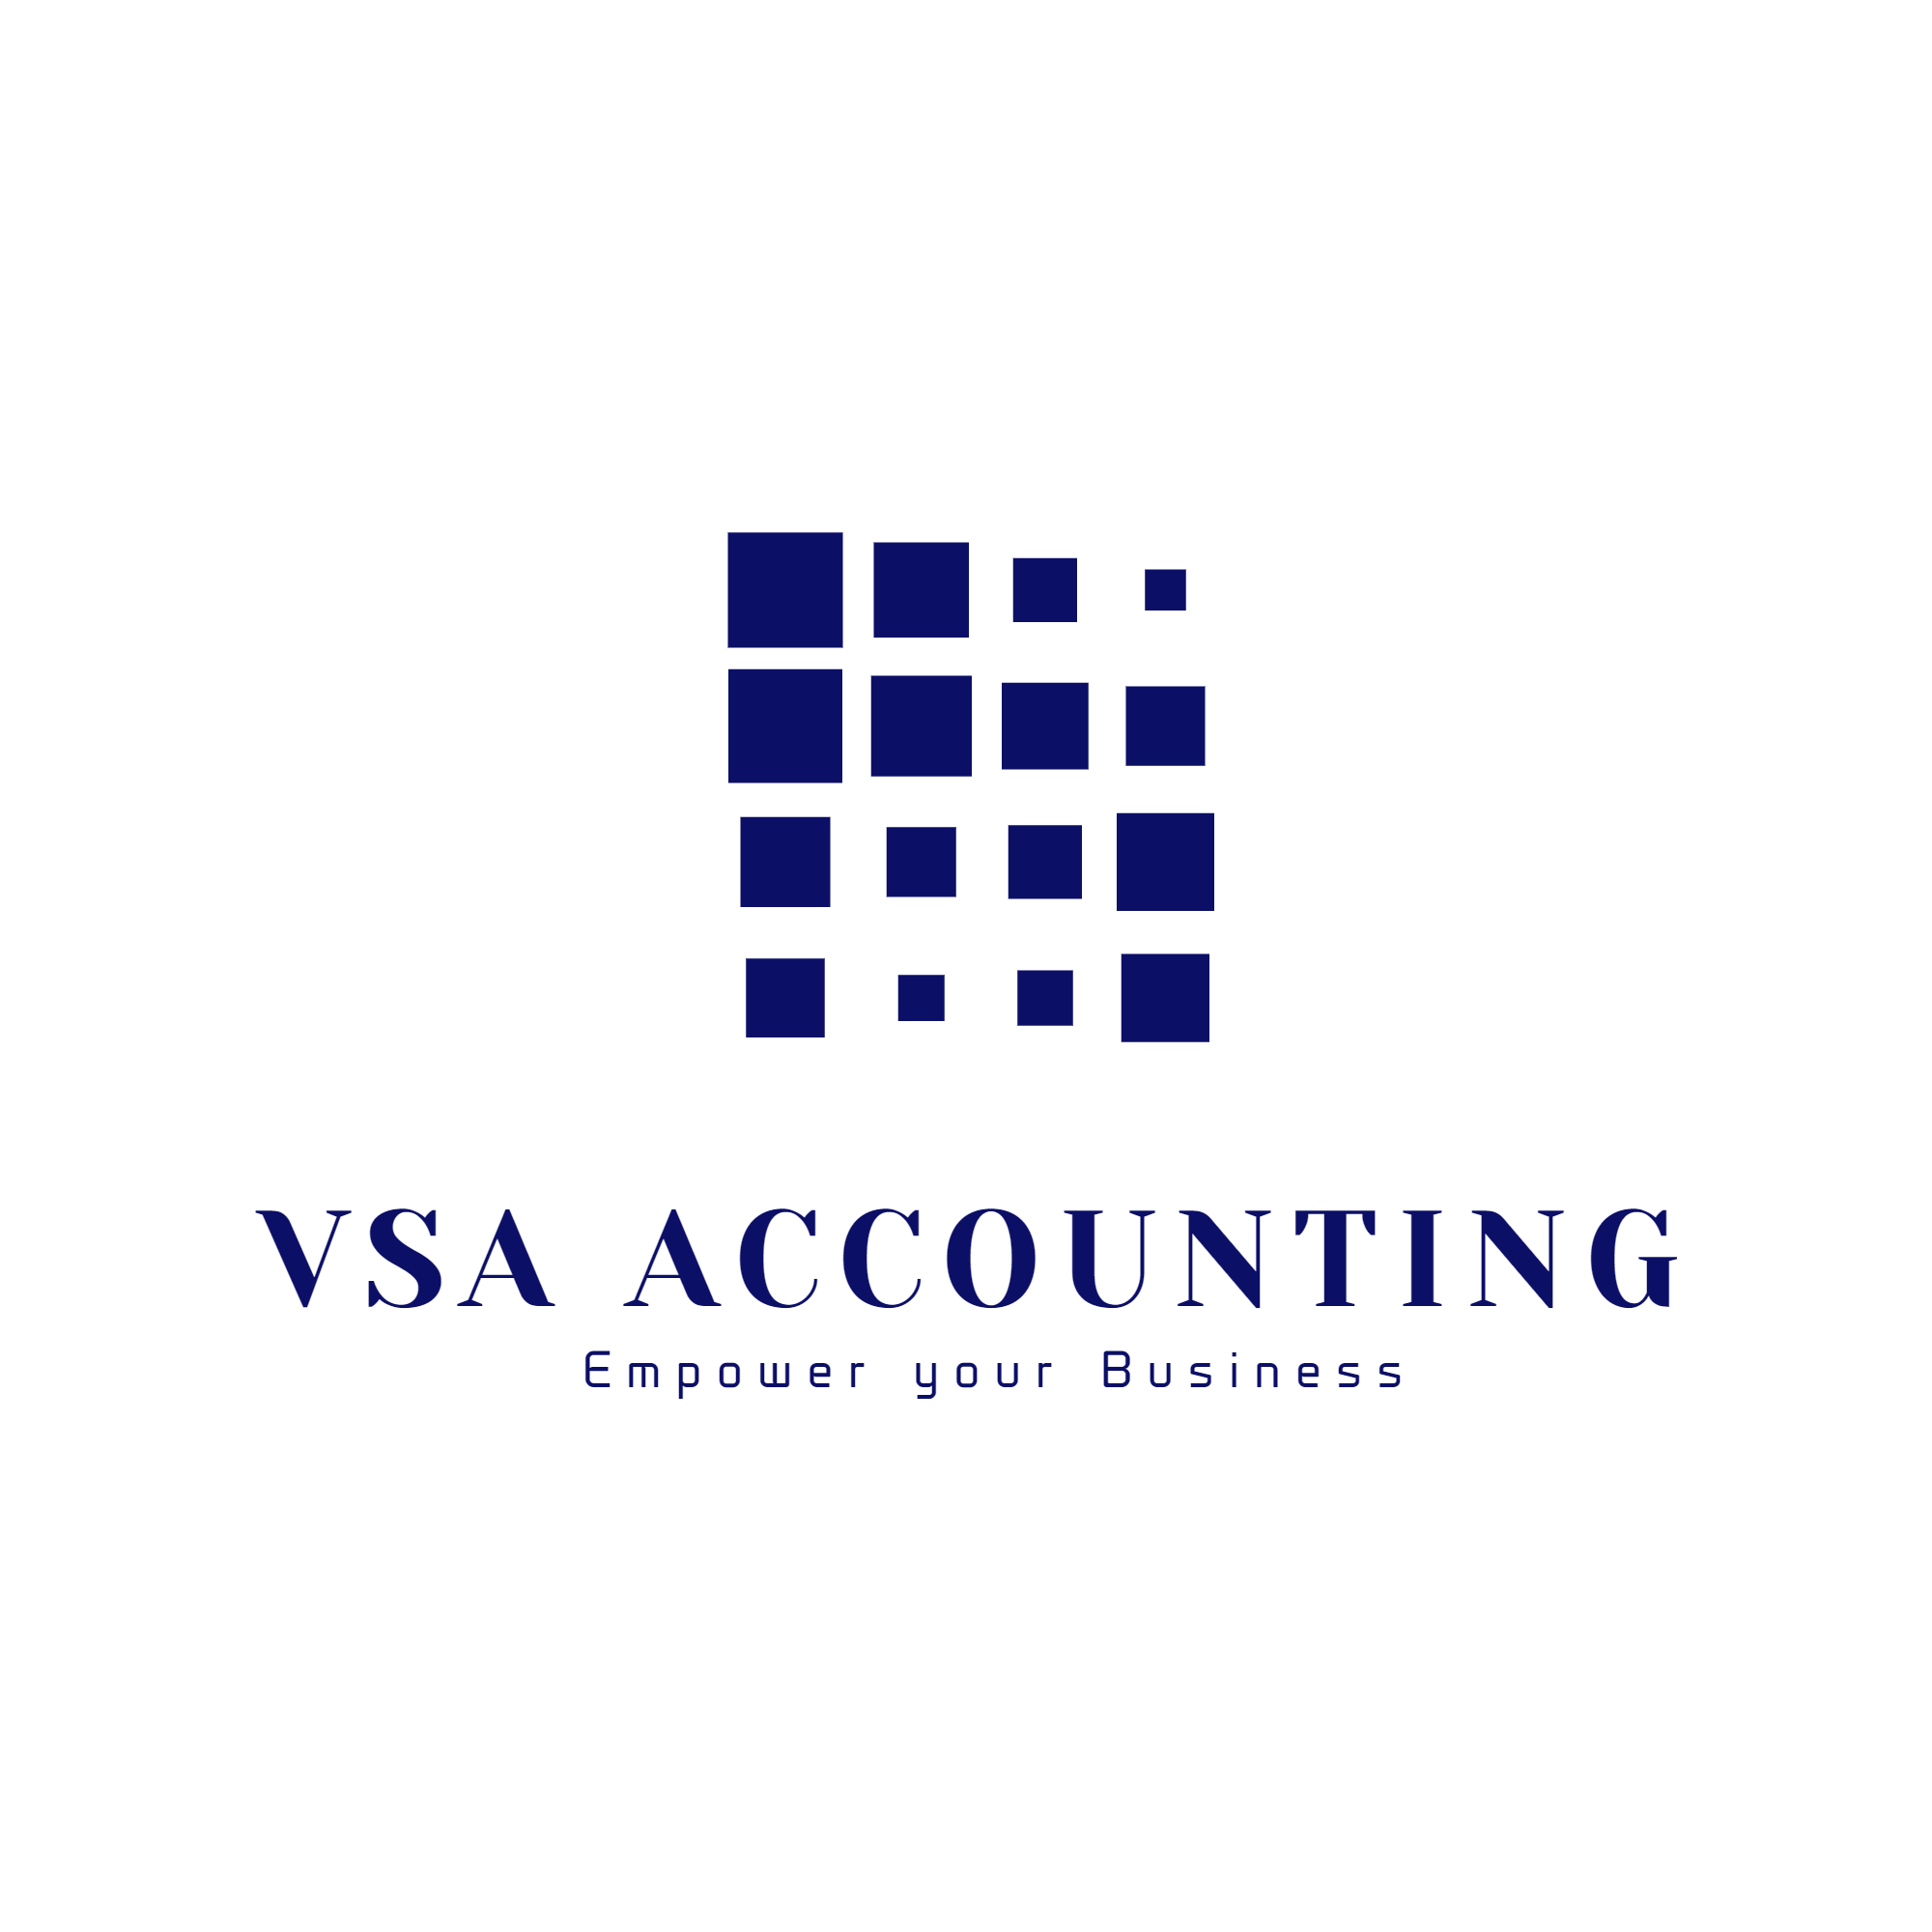 VSA ACCOUNTING Logo